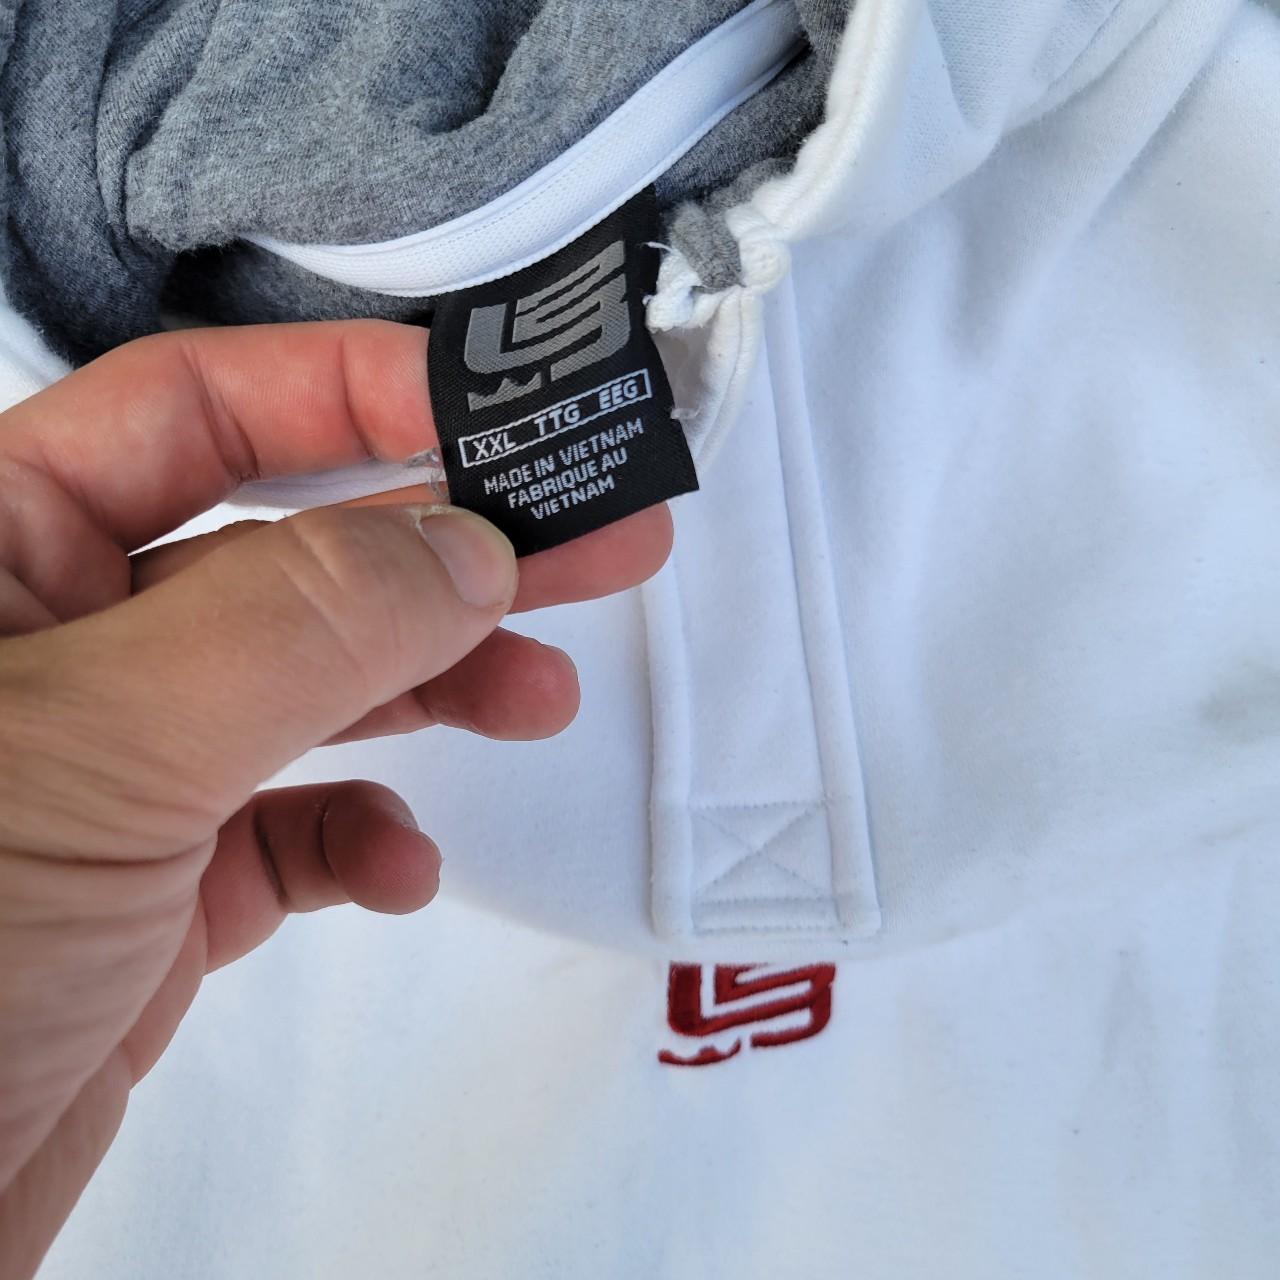 Vintage Nike Lebron James Hooded Sweatshirt - Depop